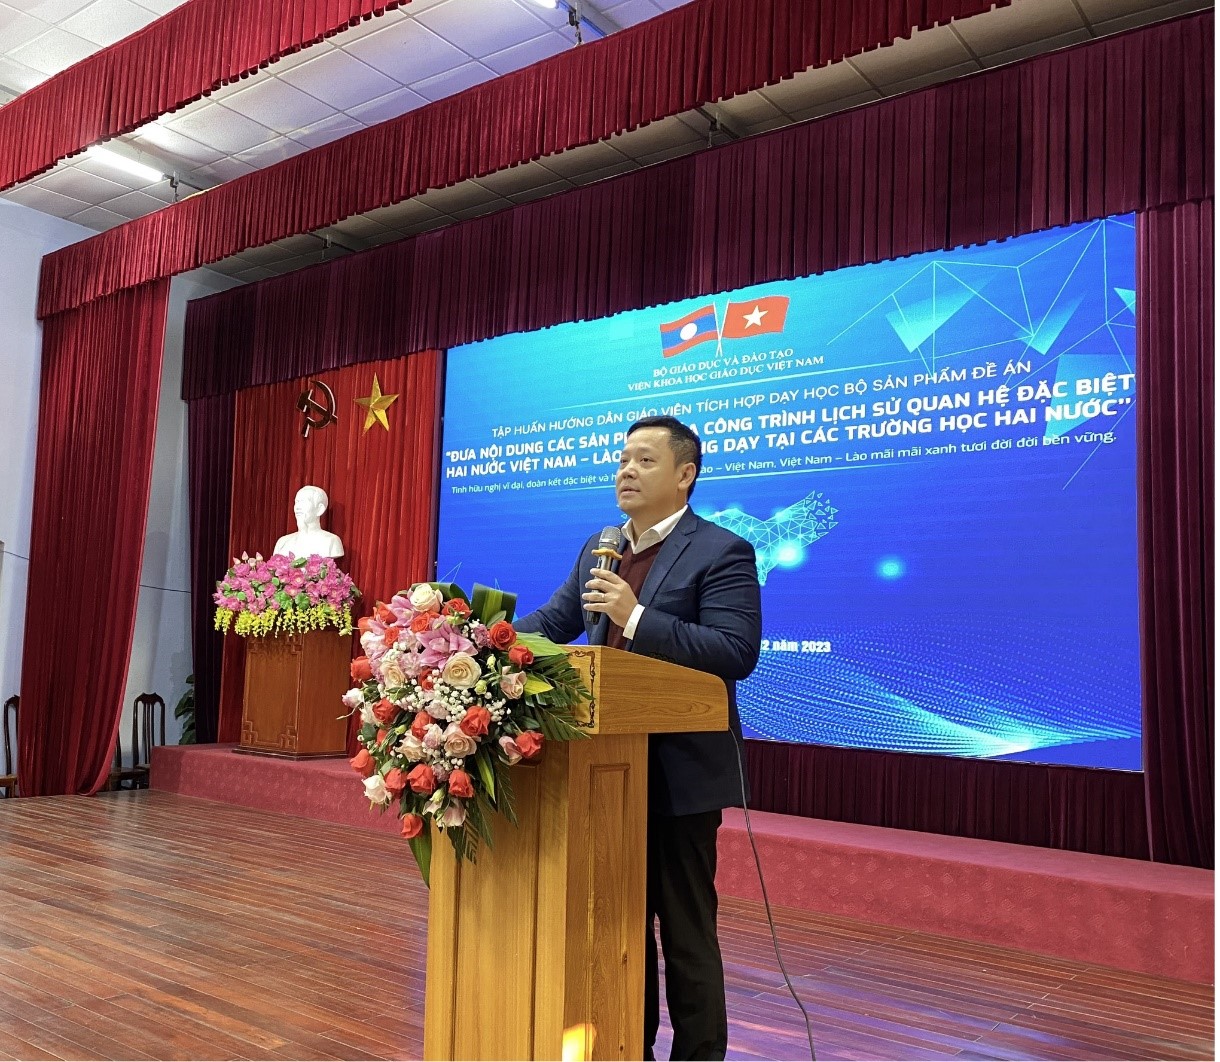 Hội nghị Tập huấn đưa nội dung các sản phẩm của công trình lịch sử quan hệ đặc biệt Việt Nam - Lào, Lào - Việt Nam vào giảng dạy tại các trường học hai nước tại Điện Biên